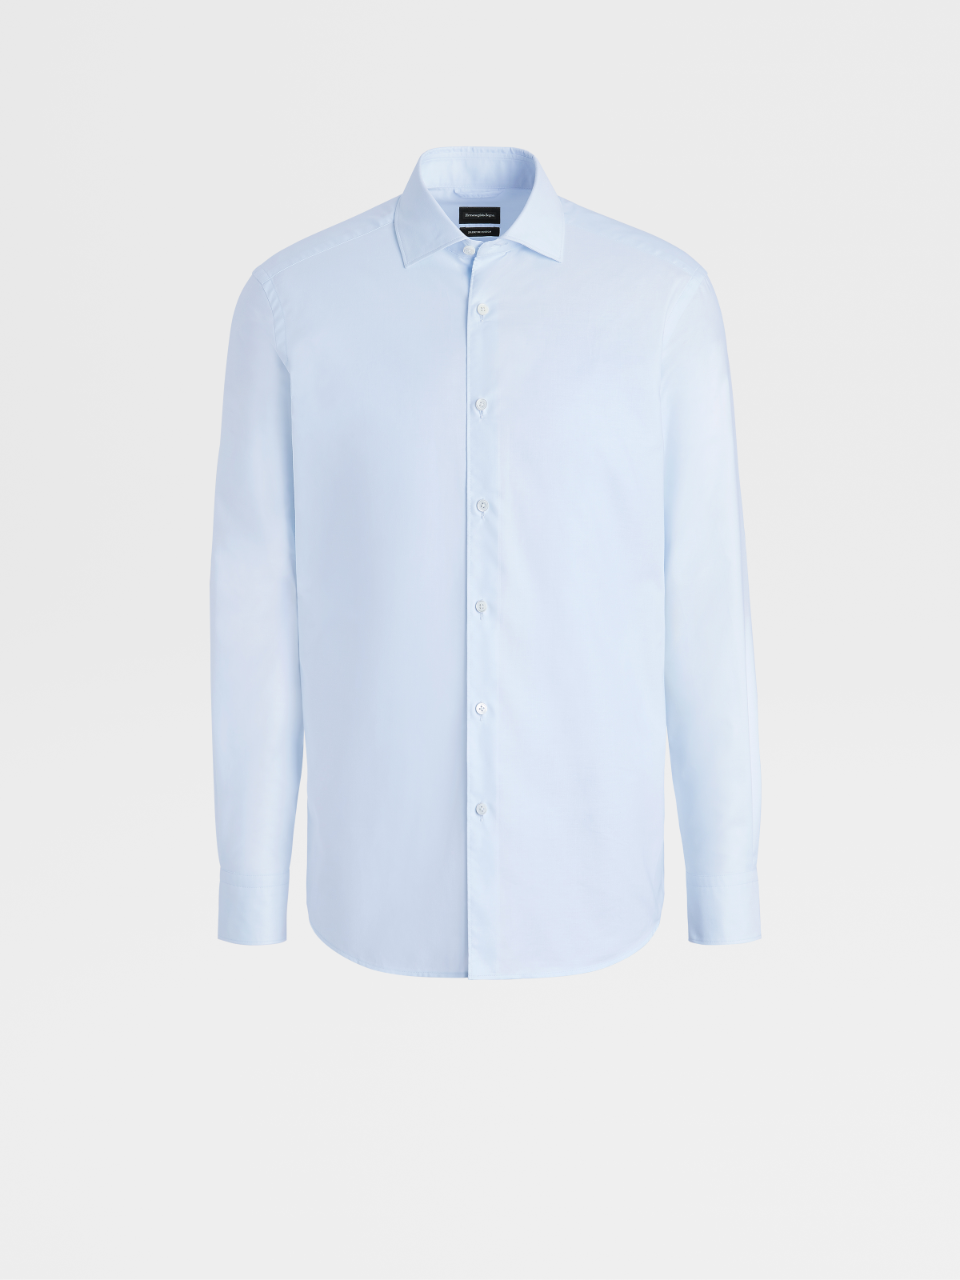 浅蓝色 Premium 棉质长袖衬衫，合身版型